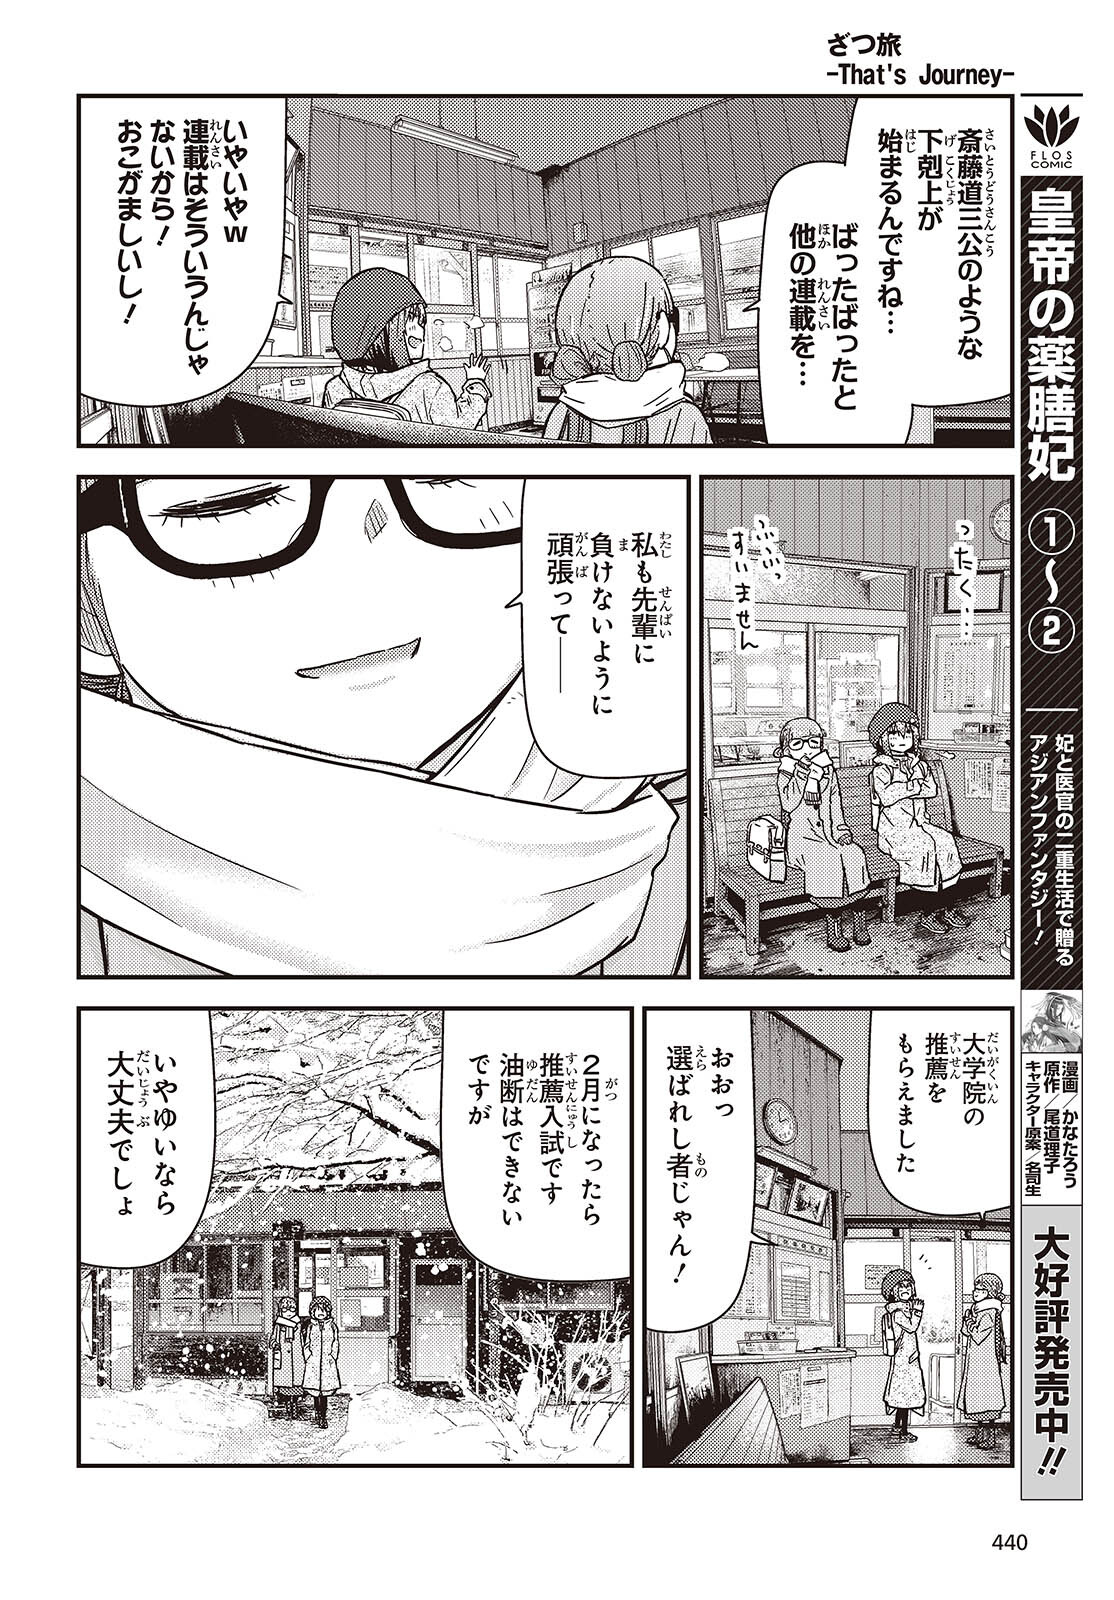 ざつ旅-That's Journey- 第36話 - Page 12